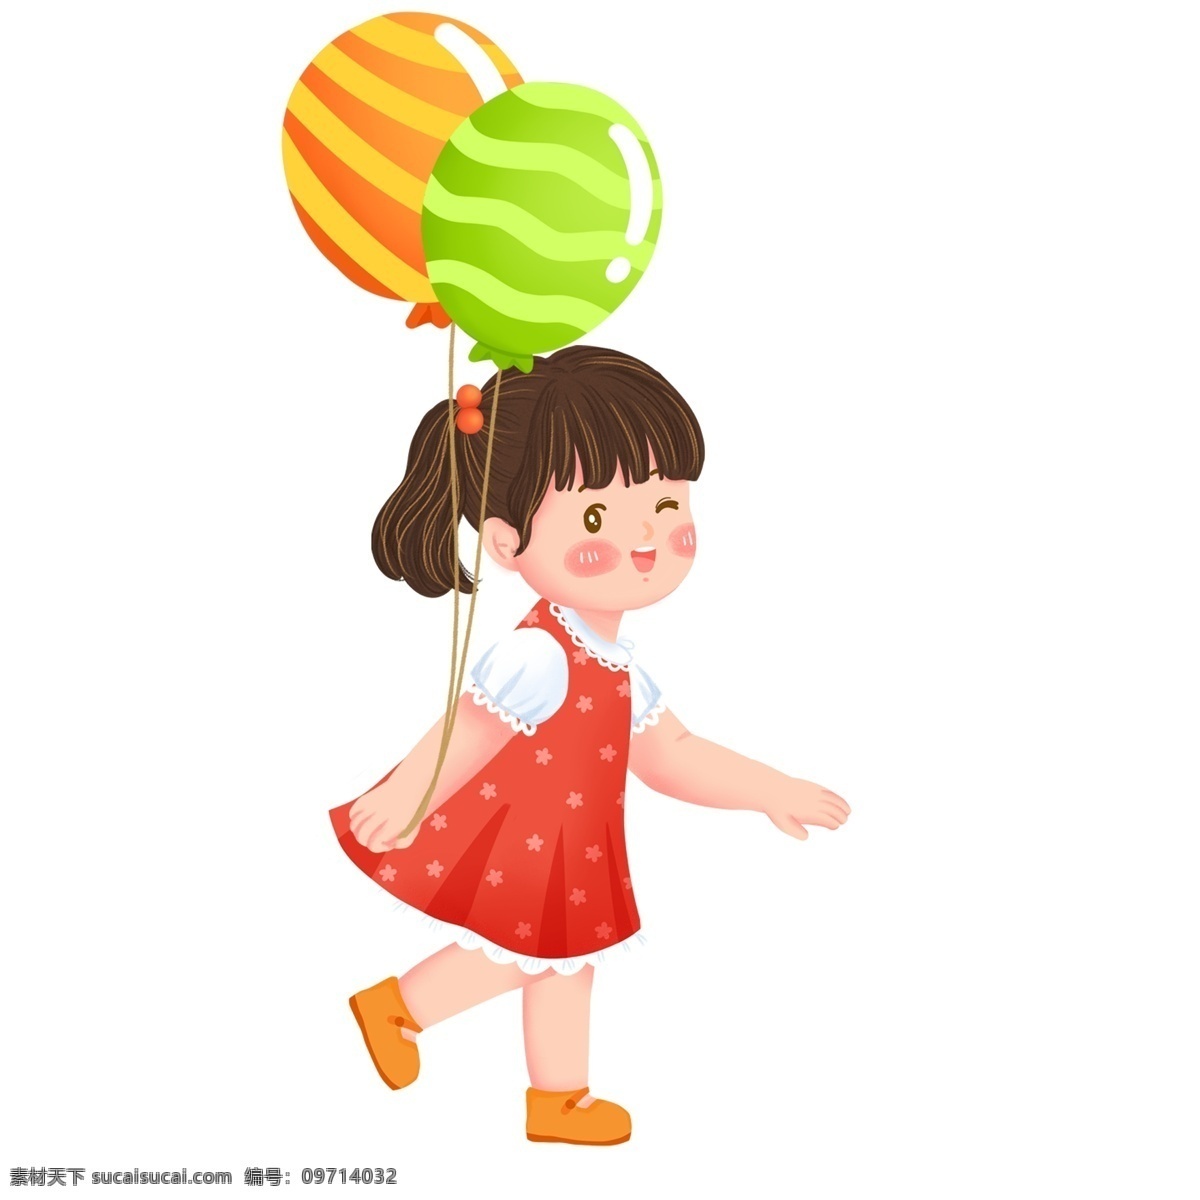 可爱 红衣 小女孩 插画 红衣服 气球 女孩 手绘 绘画 卡通 简约 小清新 装饰 彩色